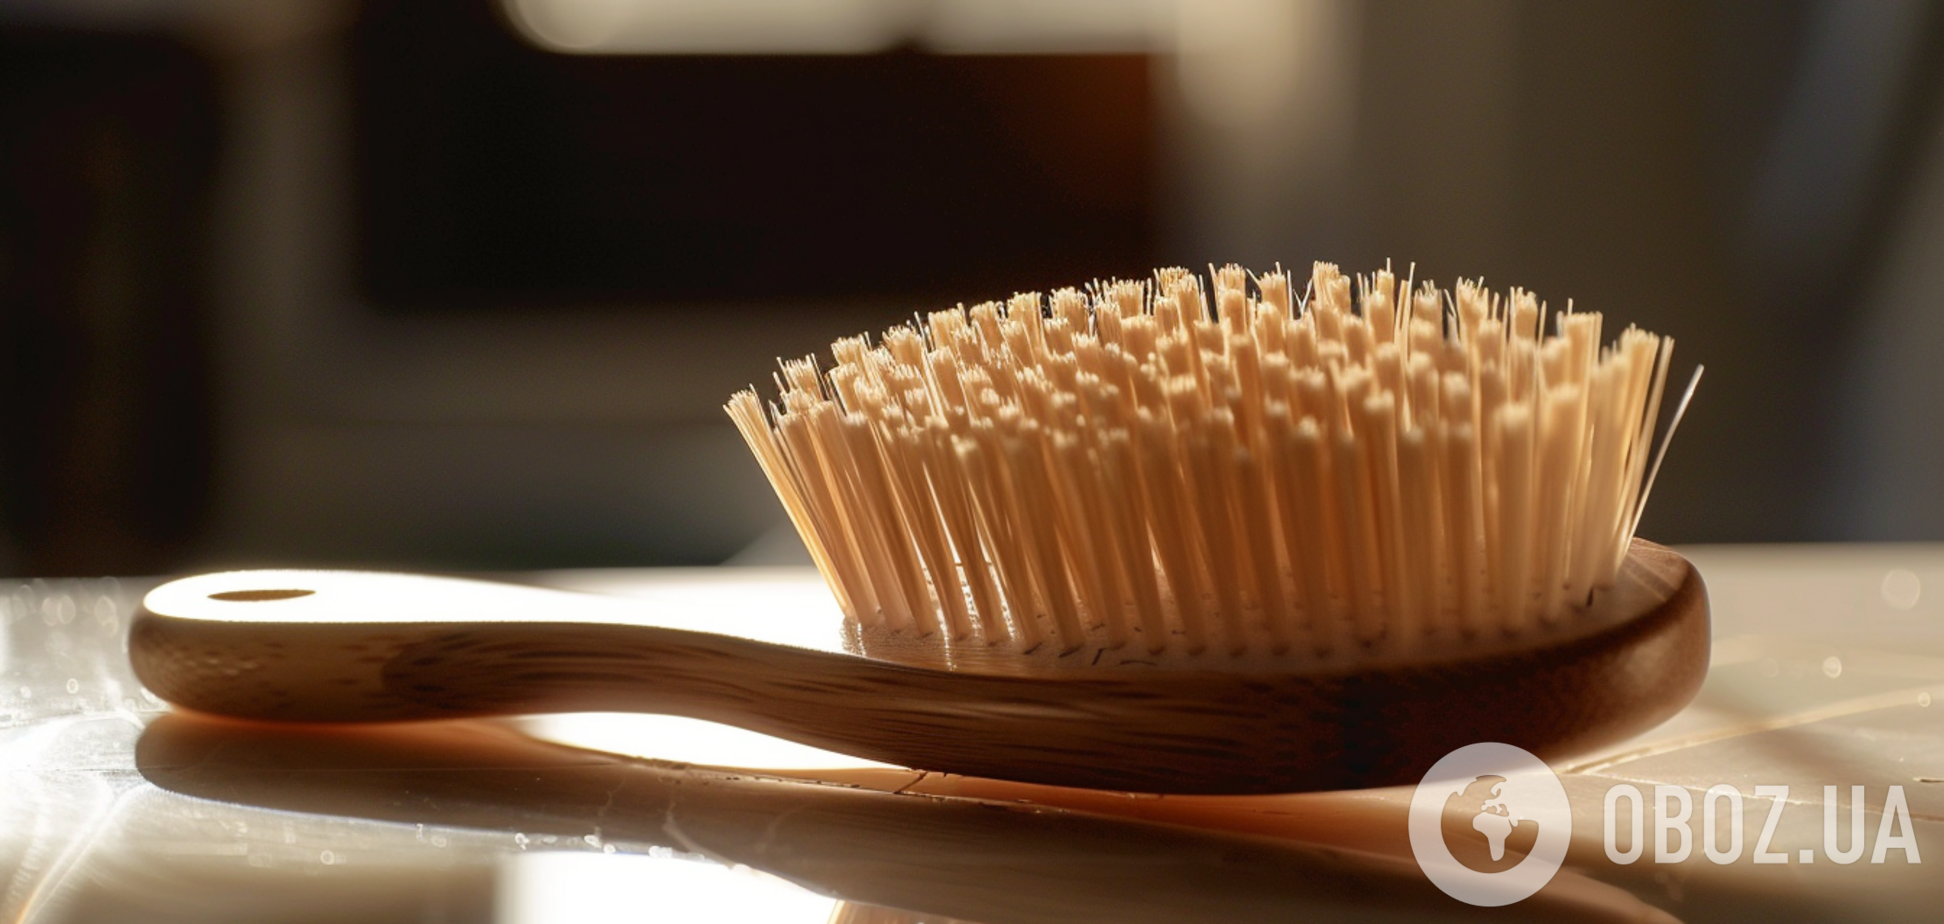 Как почистить расческу для волос, чтобы сияла чистотой: поможет простой раствор